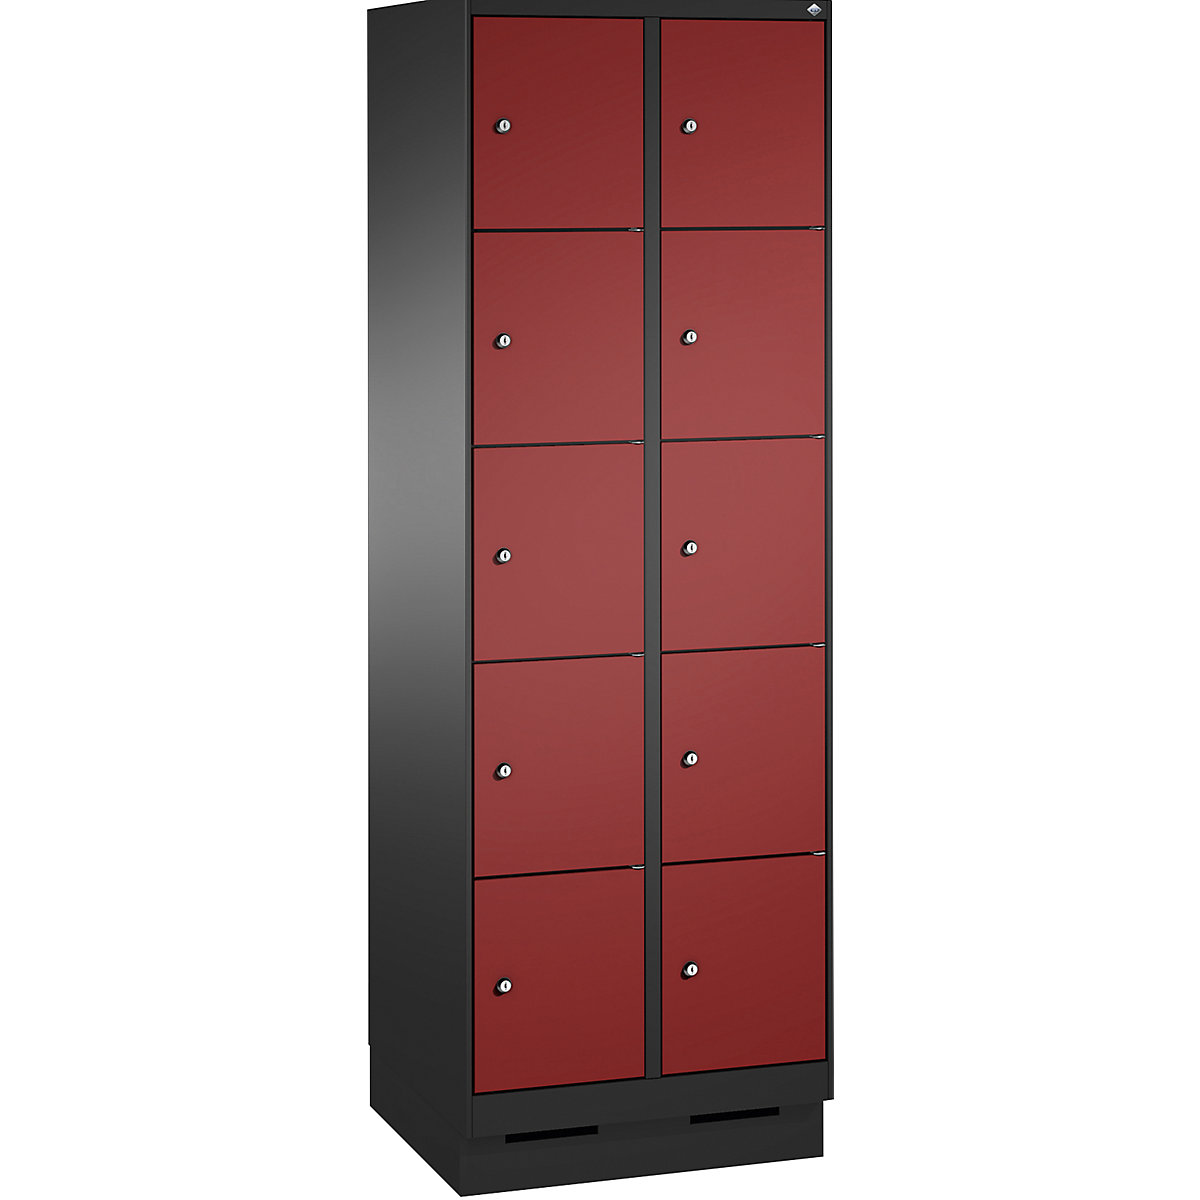 Armoire à casiers sur socle EVOLO – C+P, 2 compartiments, 5 casiers chacun, largeur compartiments 300 mm, gris noir / rouge rubis-5